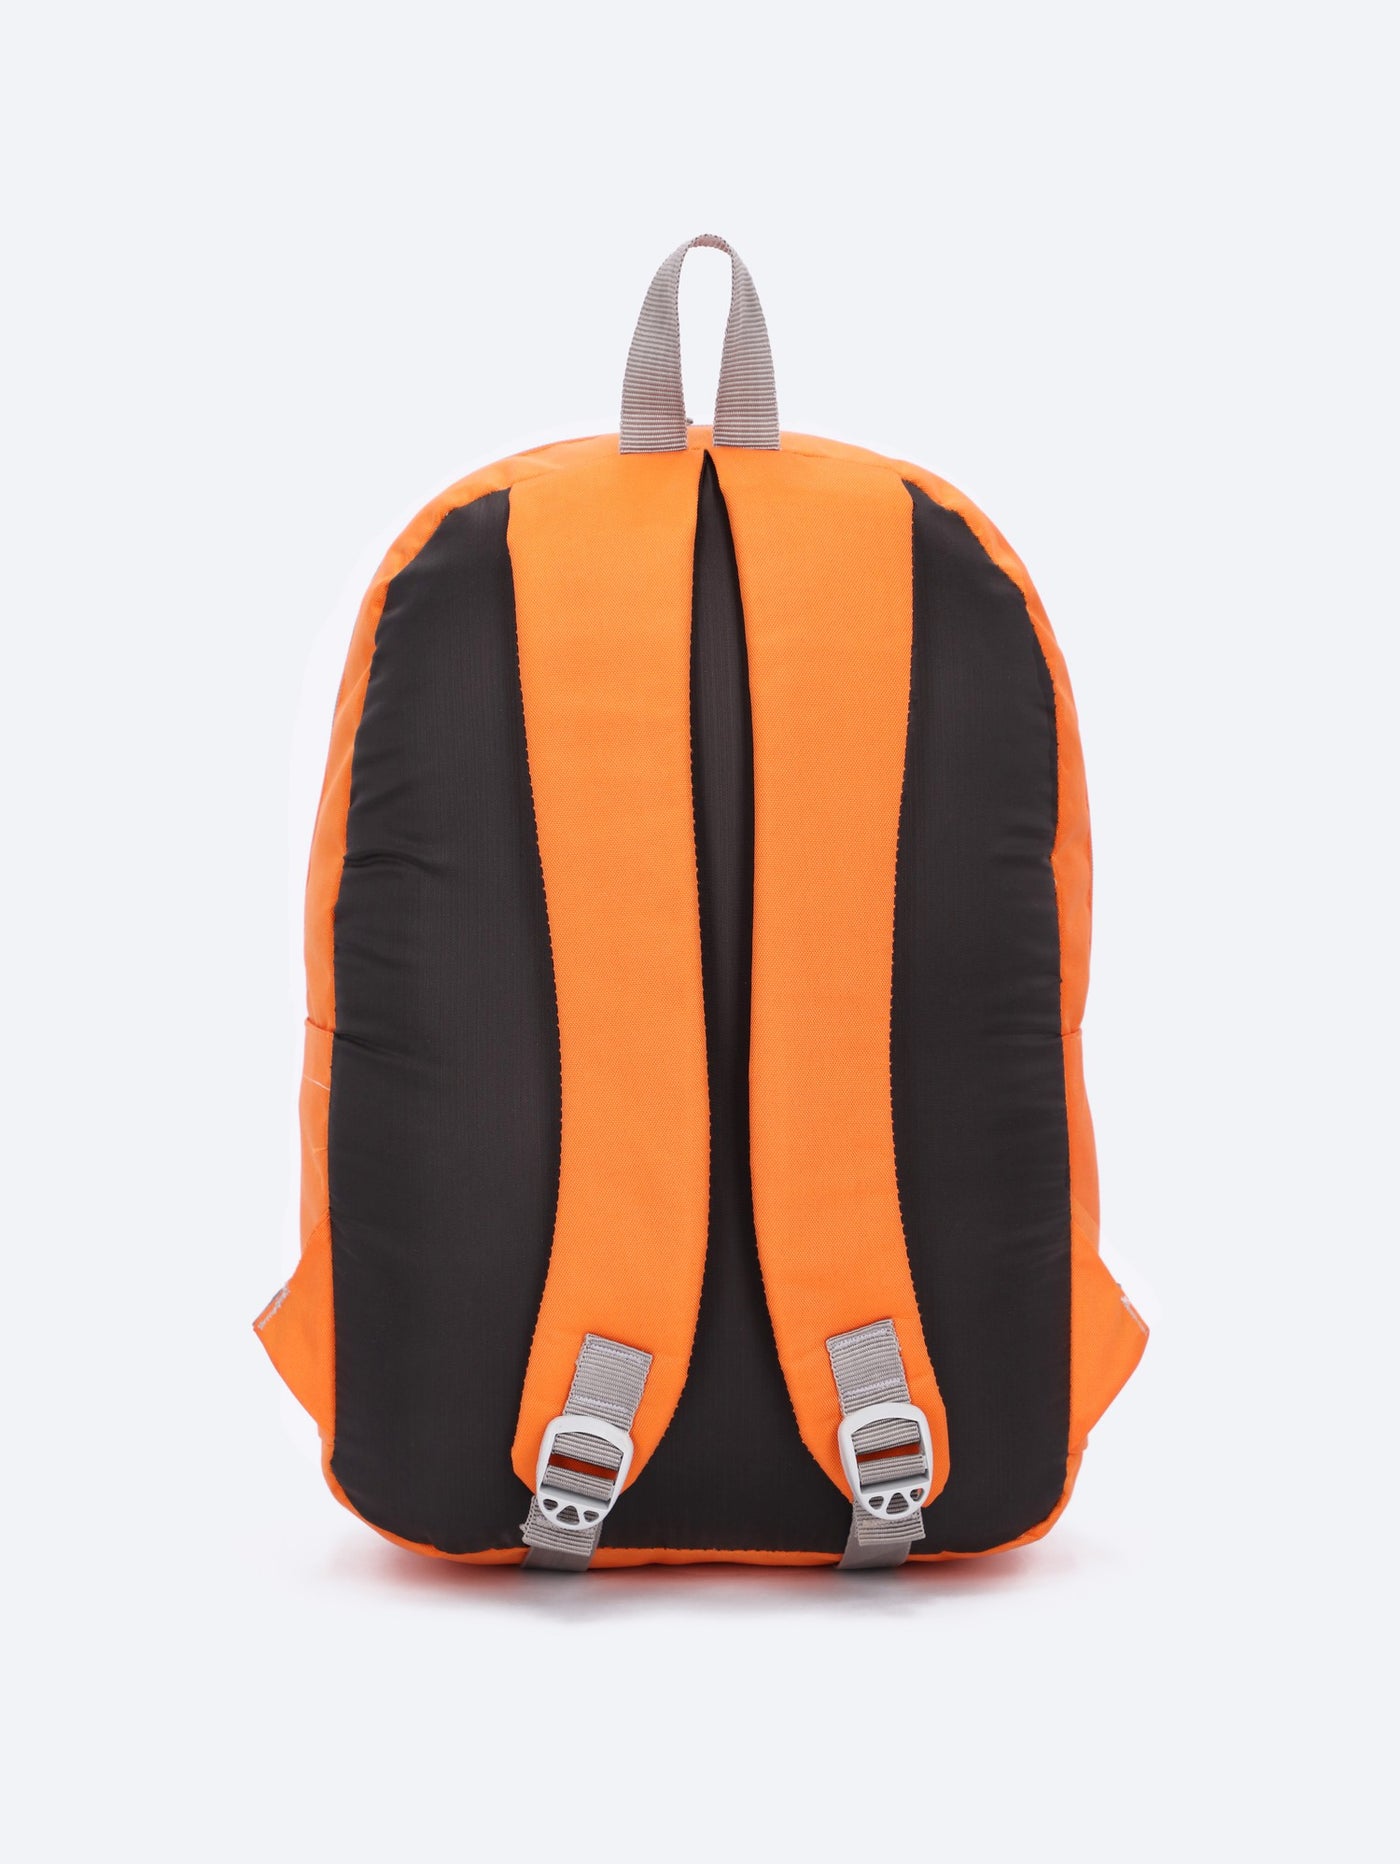 Force Unisex Backpack - Orange